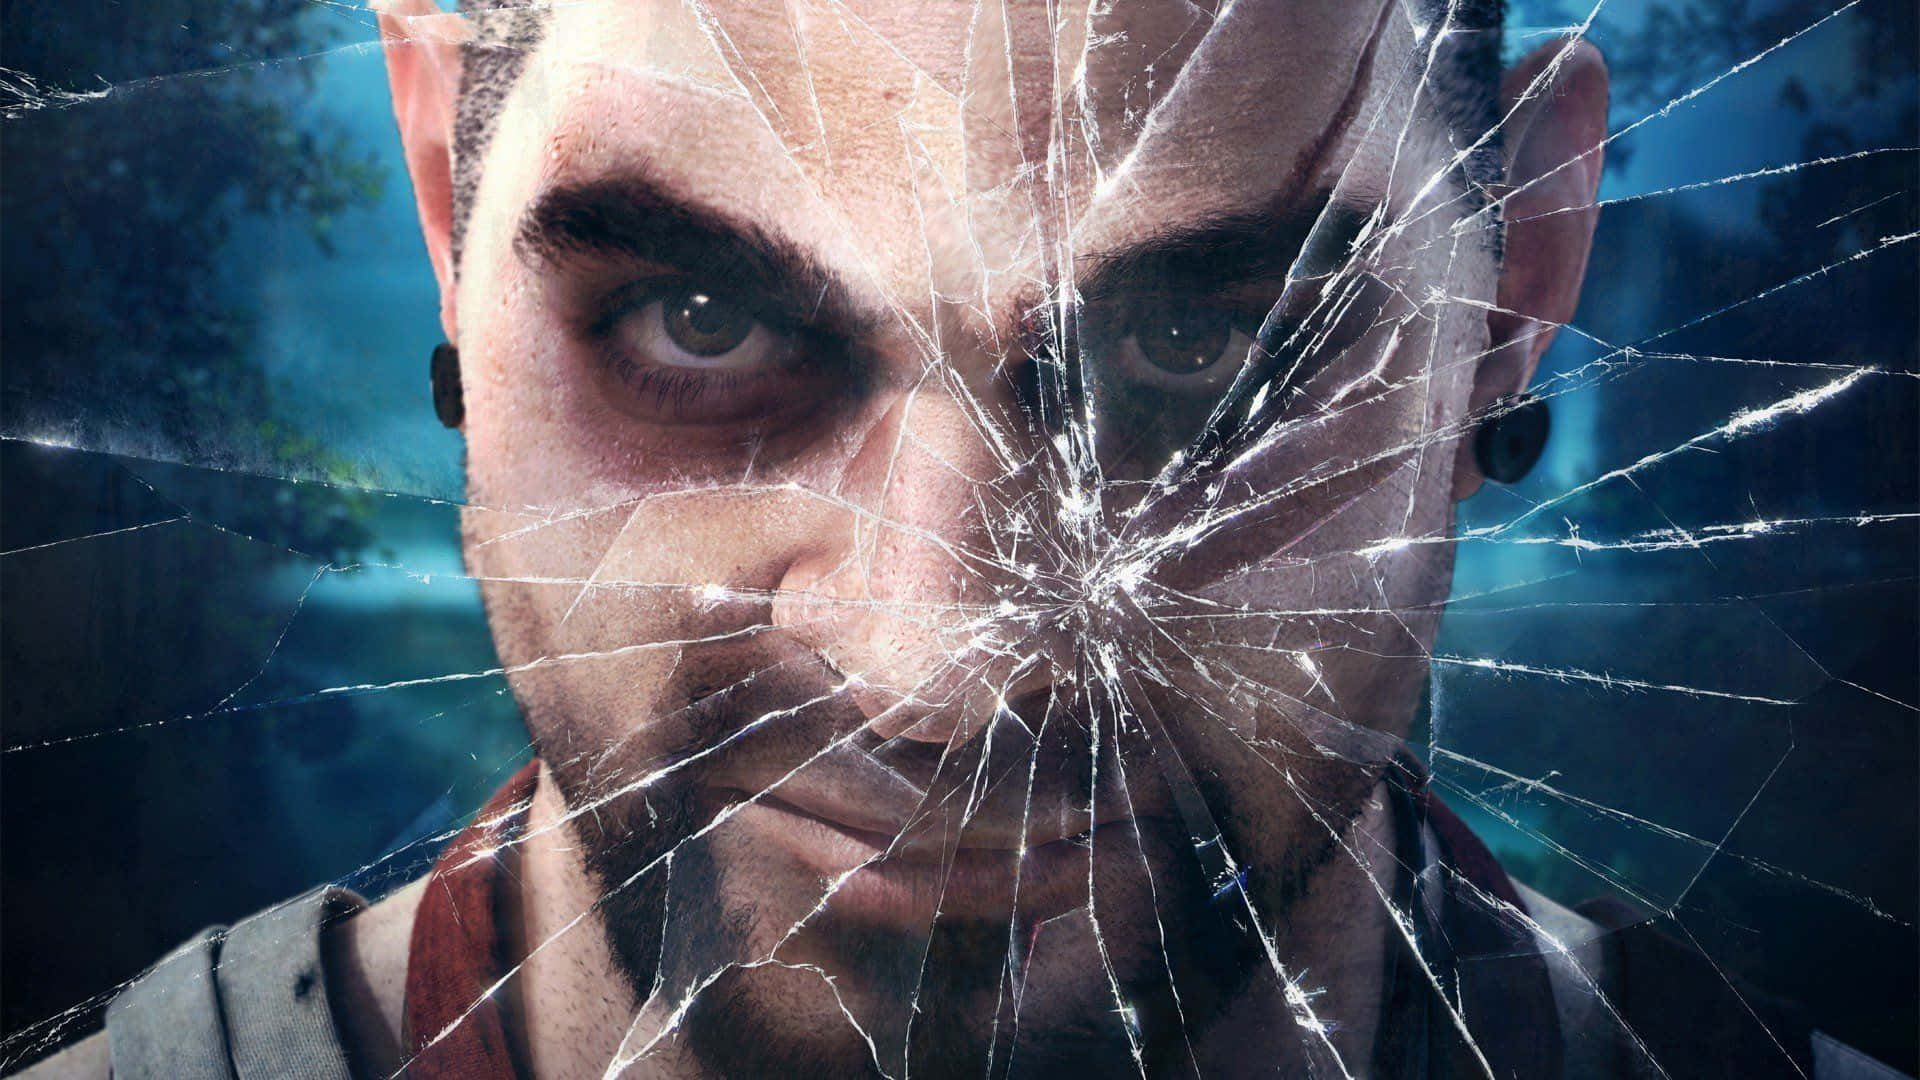 Tauchemit Vaas Aus Far Cry 3 In Das Chaos Ein. Wallpaper